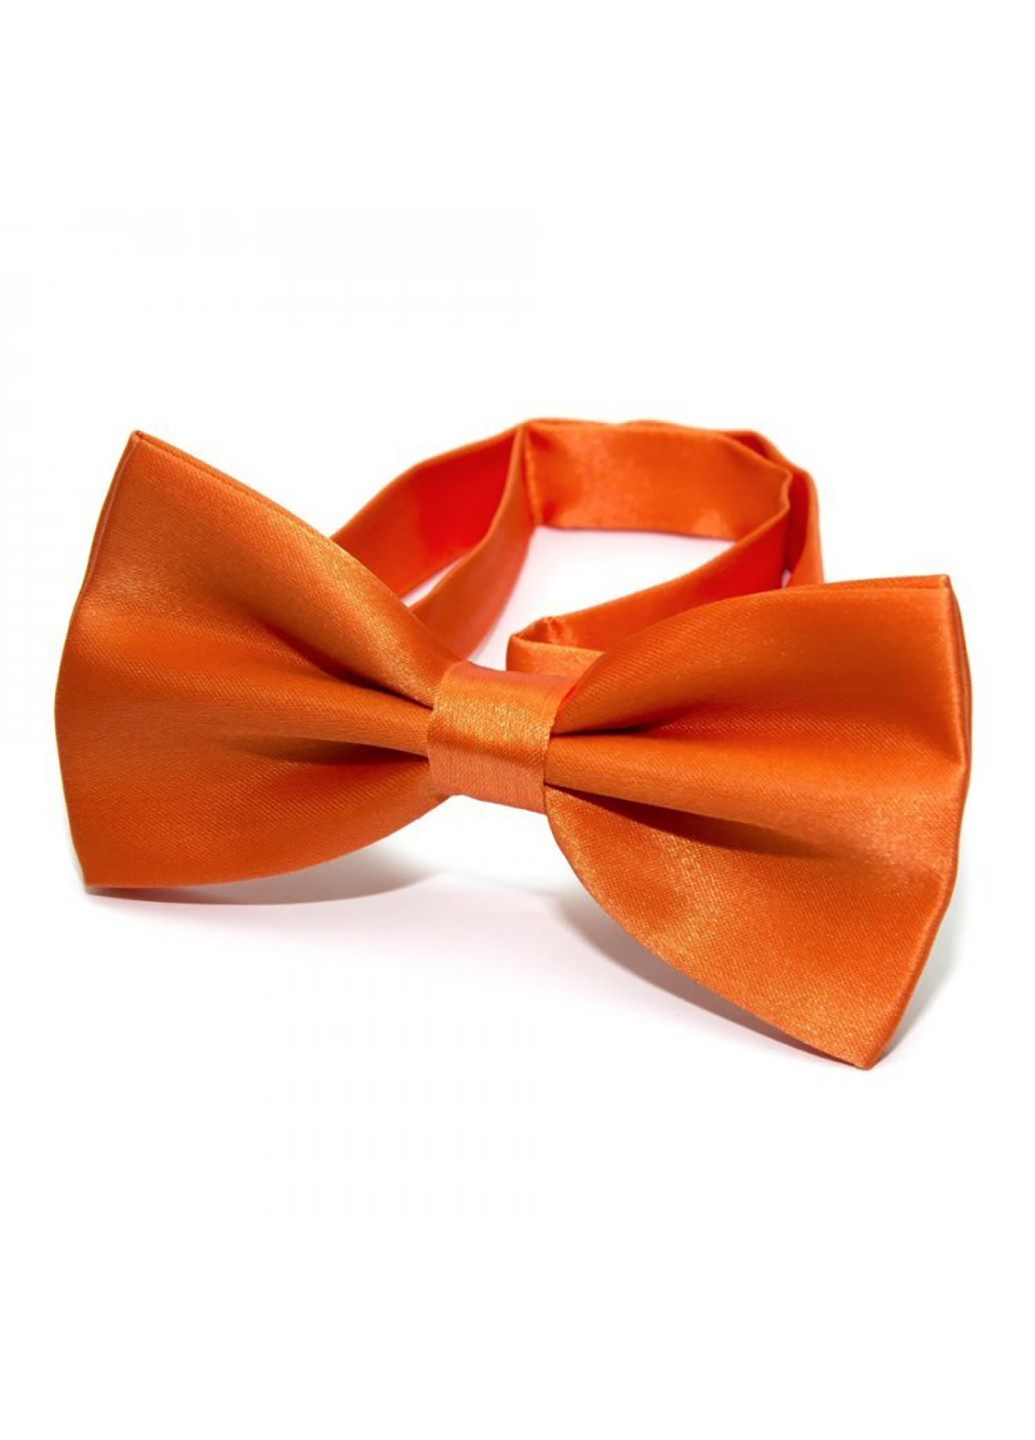 Мужской галстук бабочка 6,5х12,5 см Handmade (252127235)